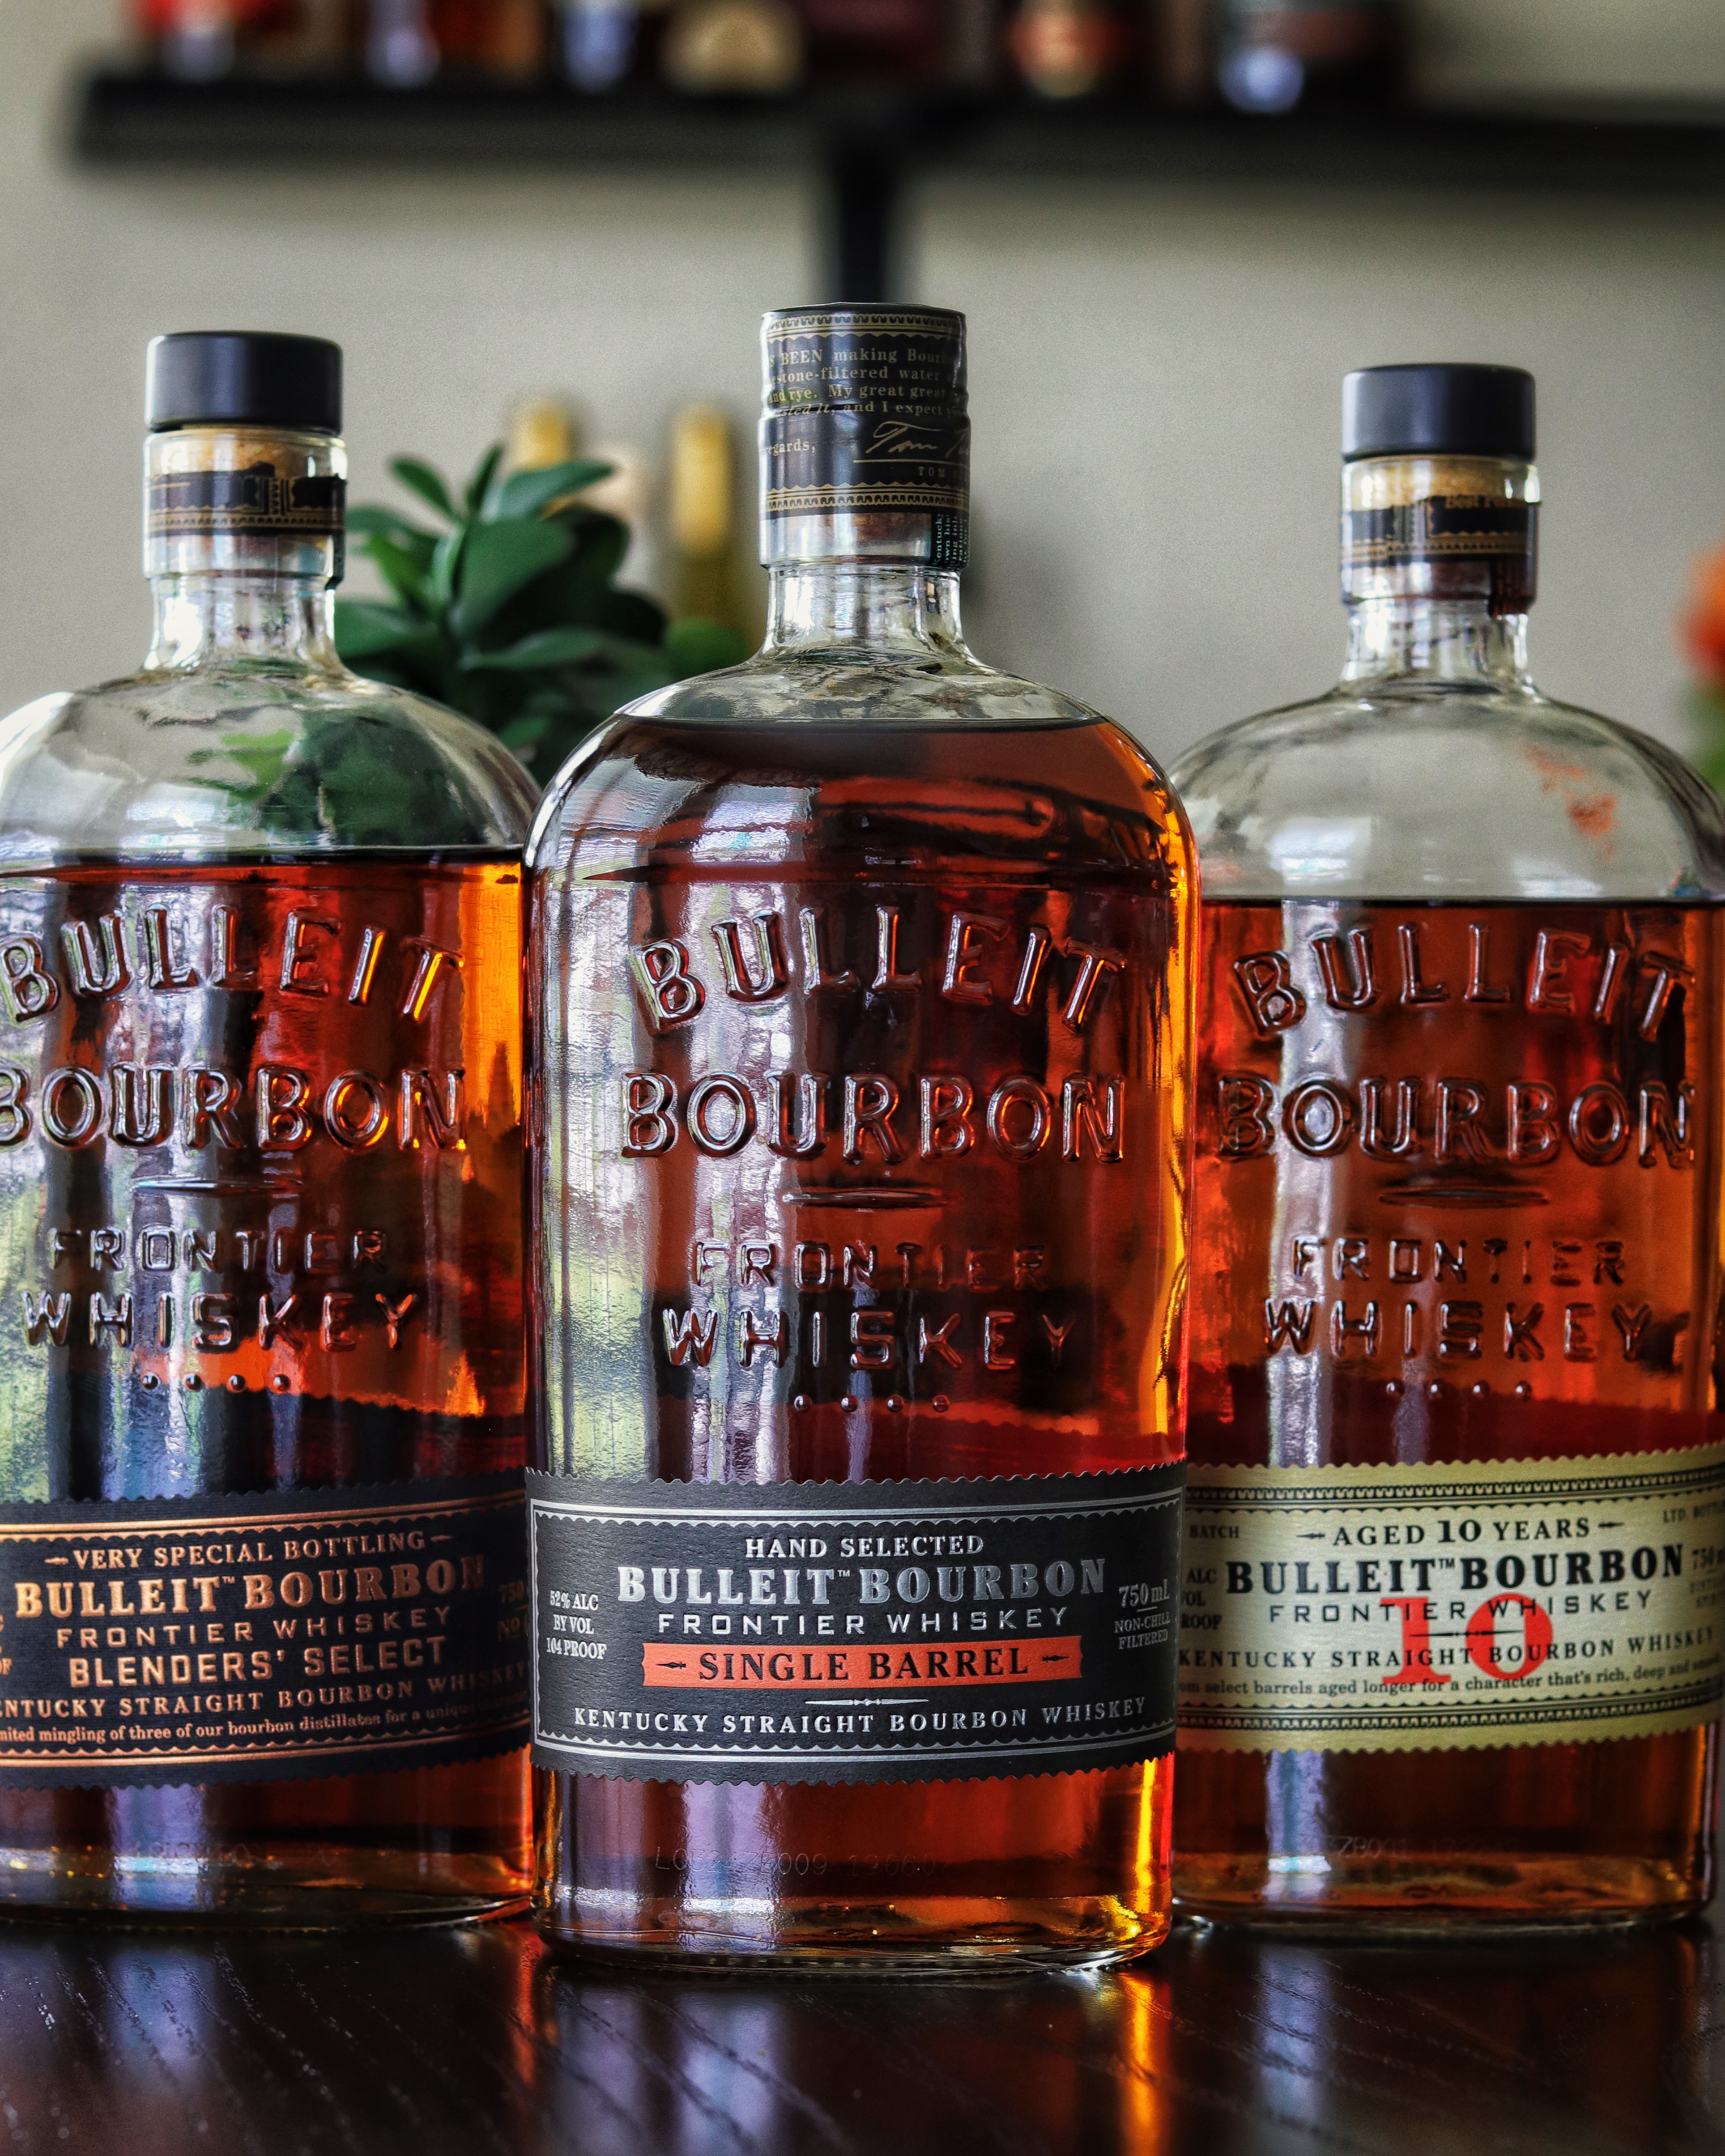 125: Tasting Through A Unique Lineup of Bulleit Bourbon